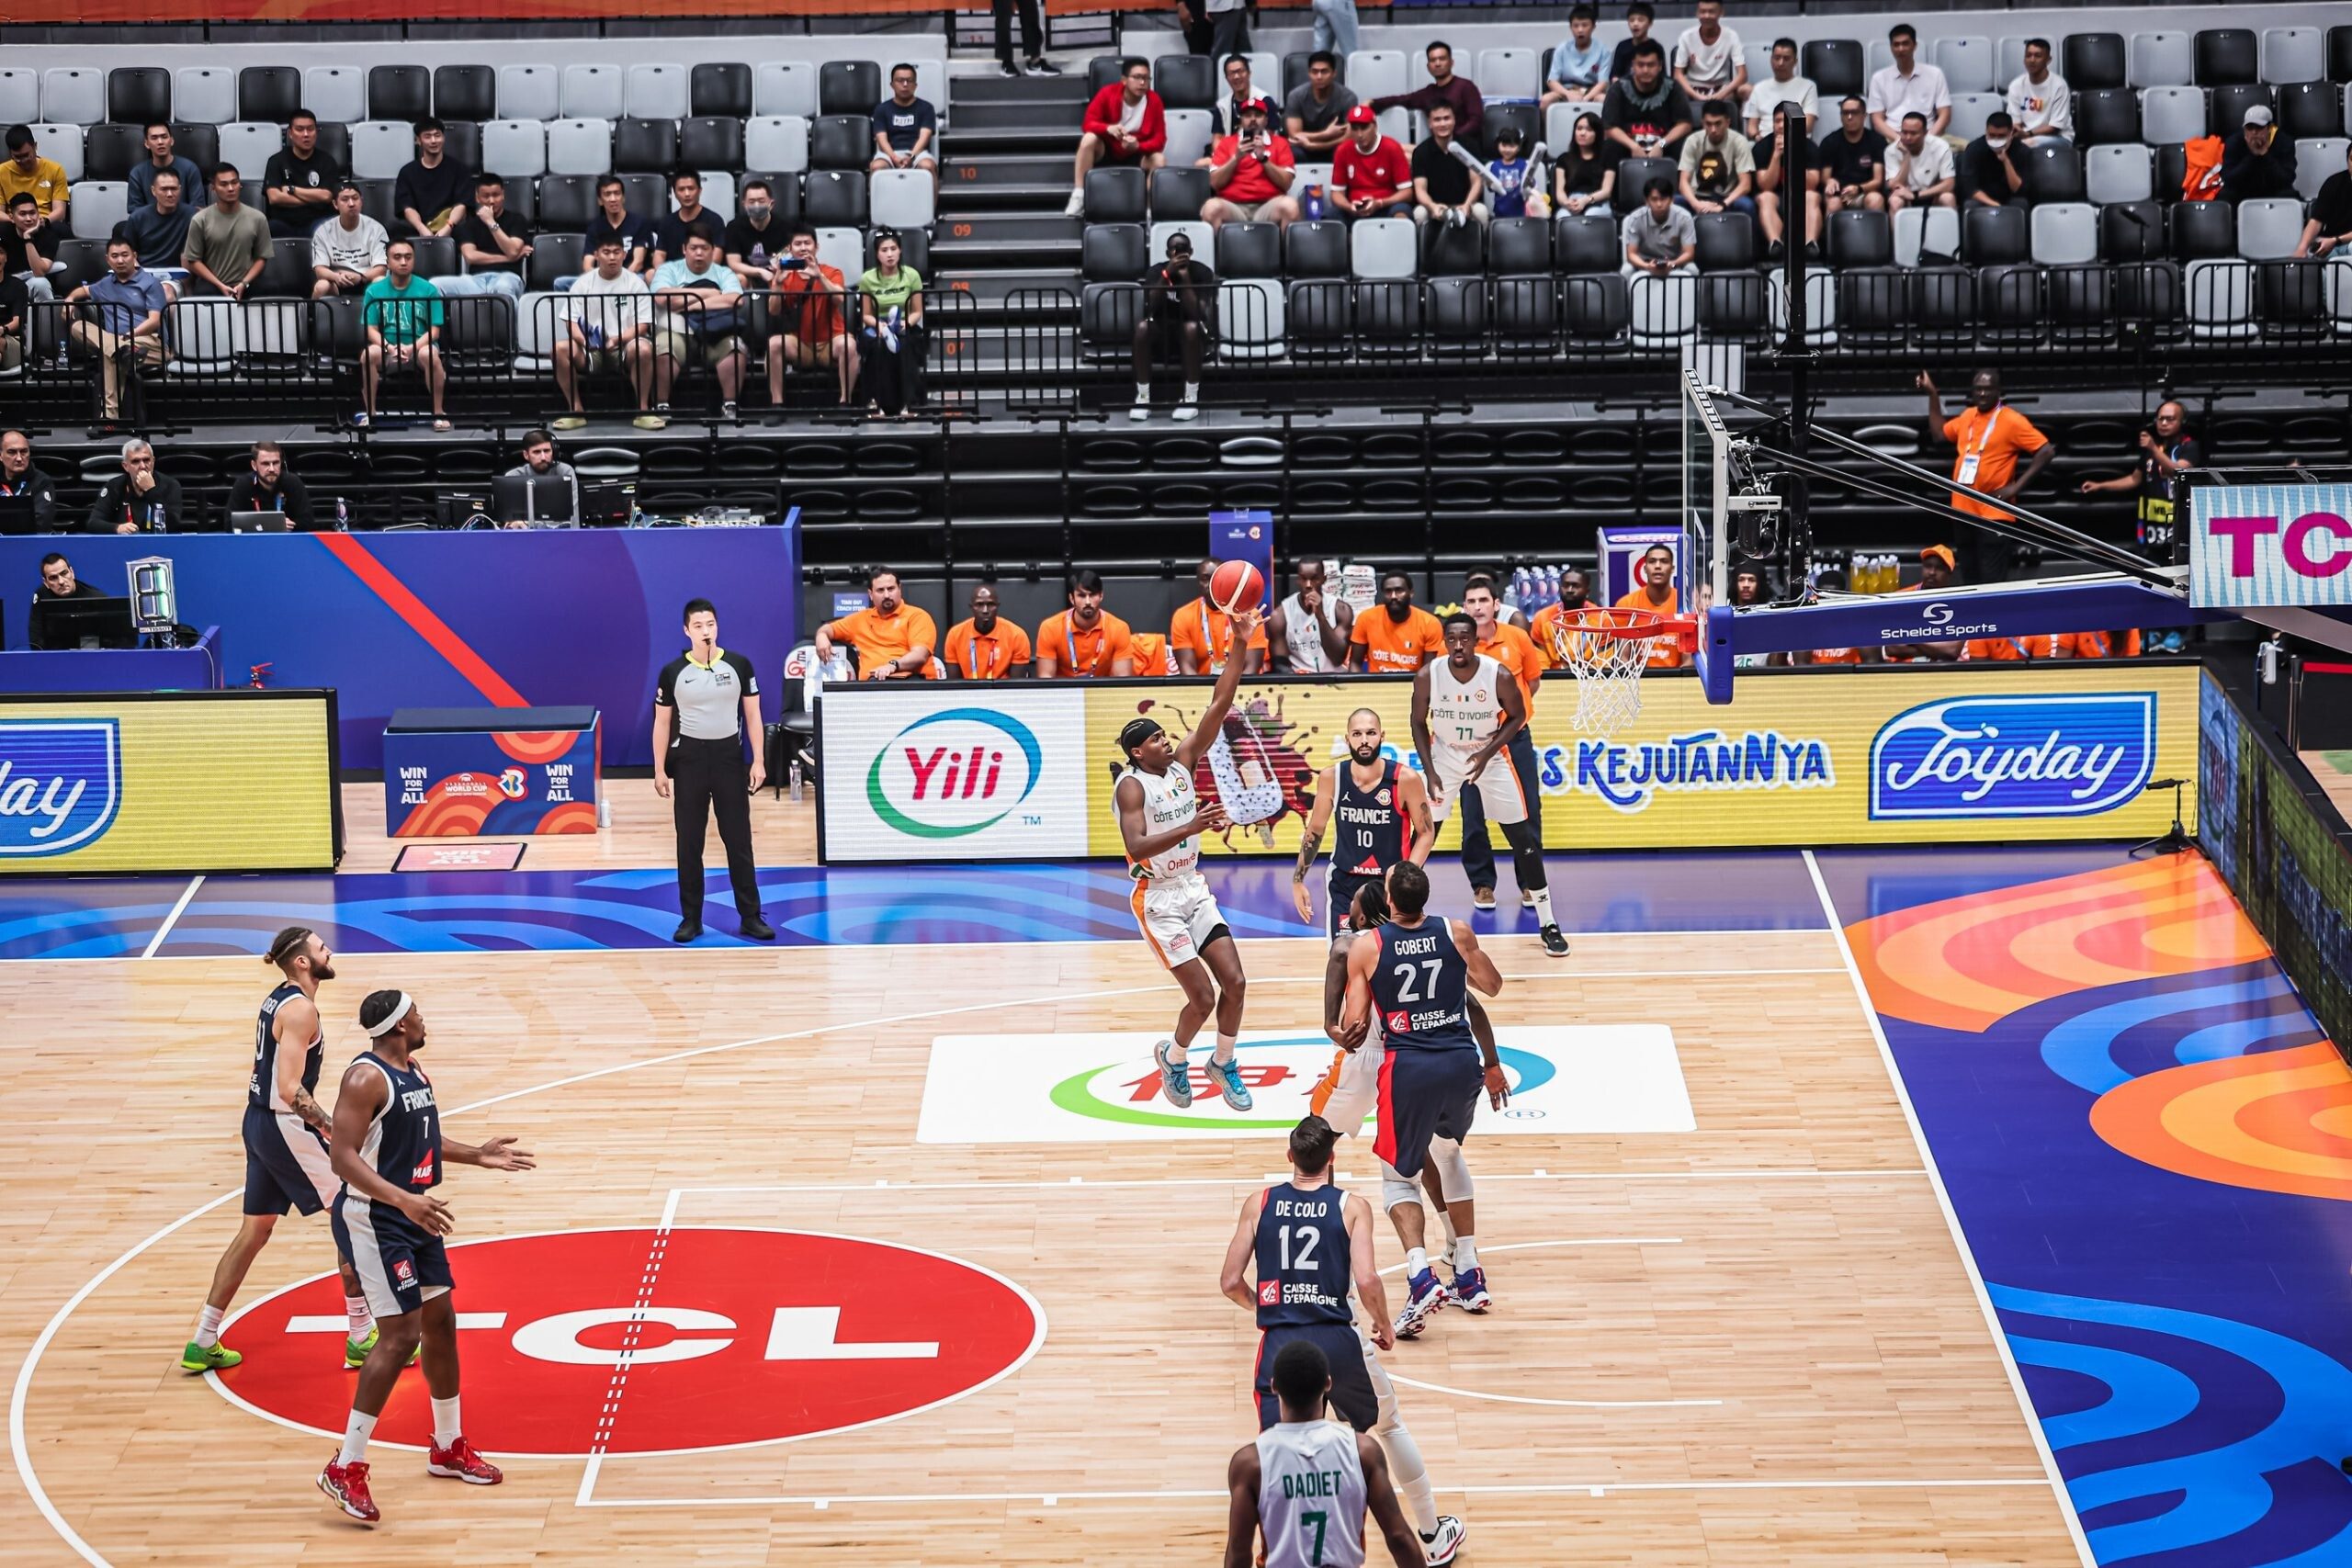 ไอศกรีม Joyday ในเครือ Yili รับบทผู้สนับสนุนไอศกรีมของศึกบาสเกตบอลชิงแชมป์โลก FIBA Basketball World Cup 2023